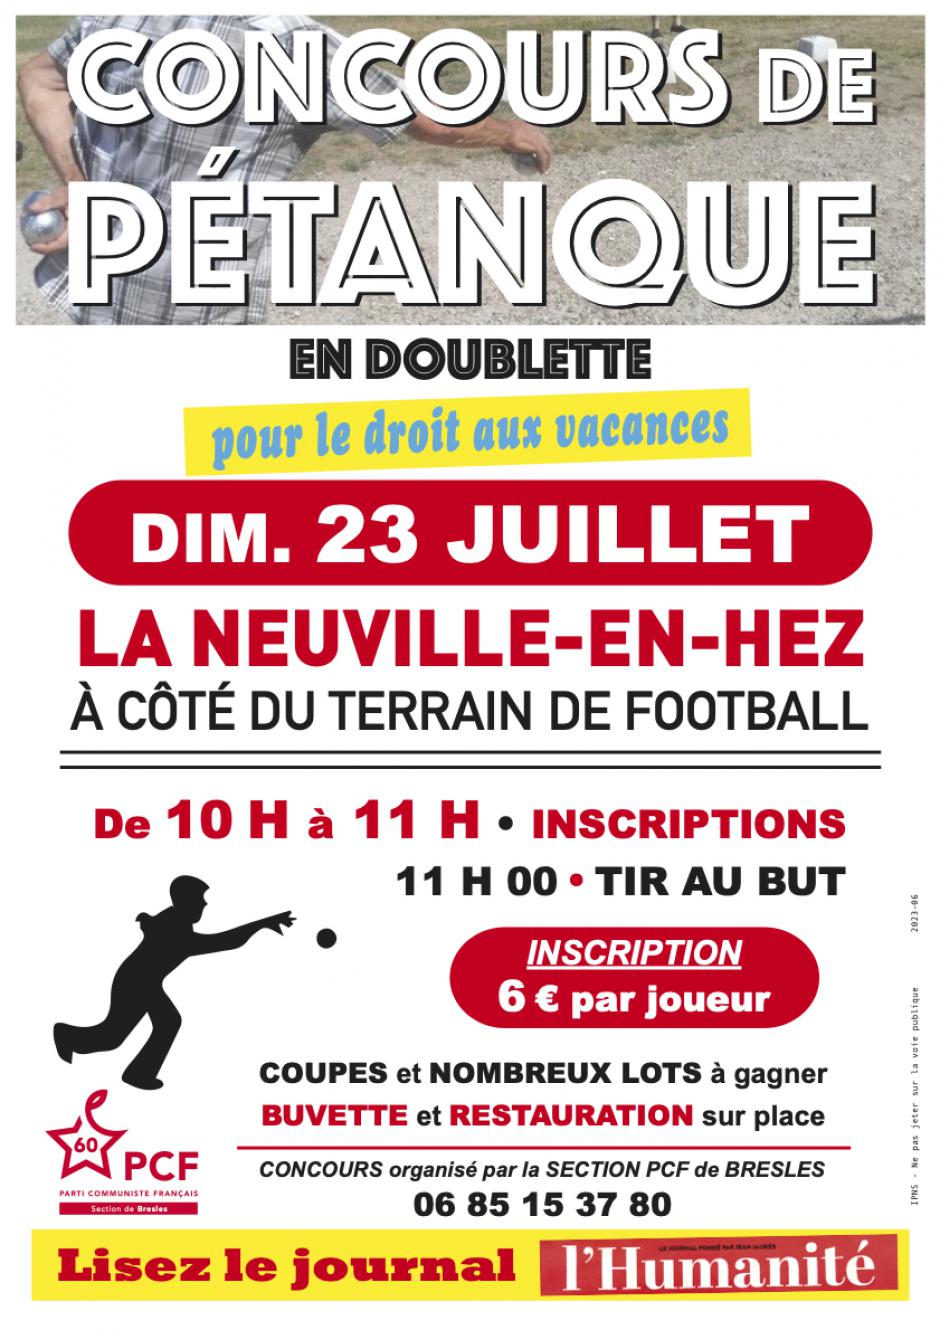 23 juillet, La Neuville-en-Hez - Concours de pétanque de la section PCF de Bresles